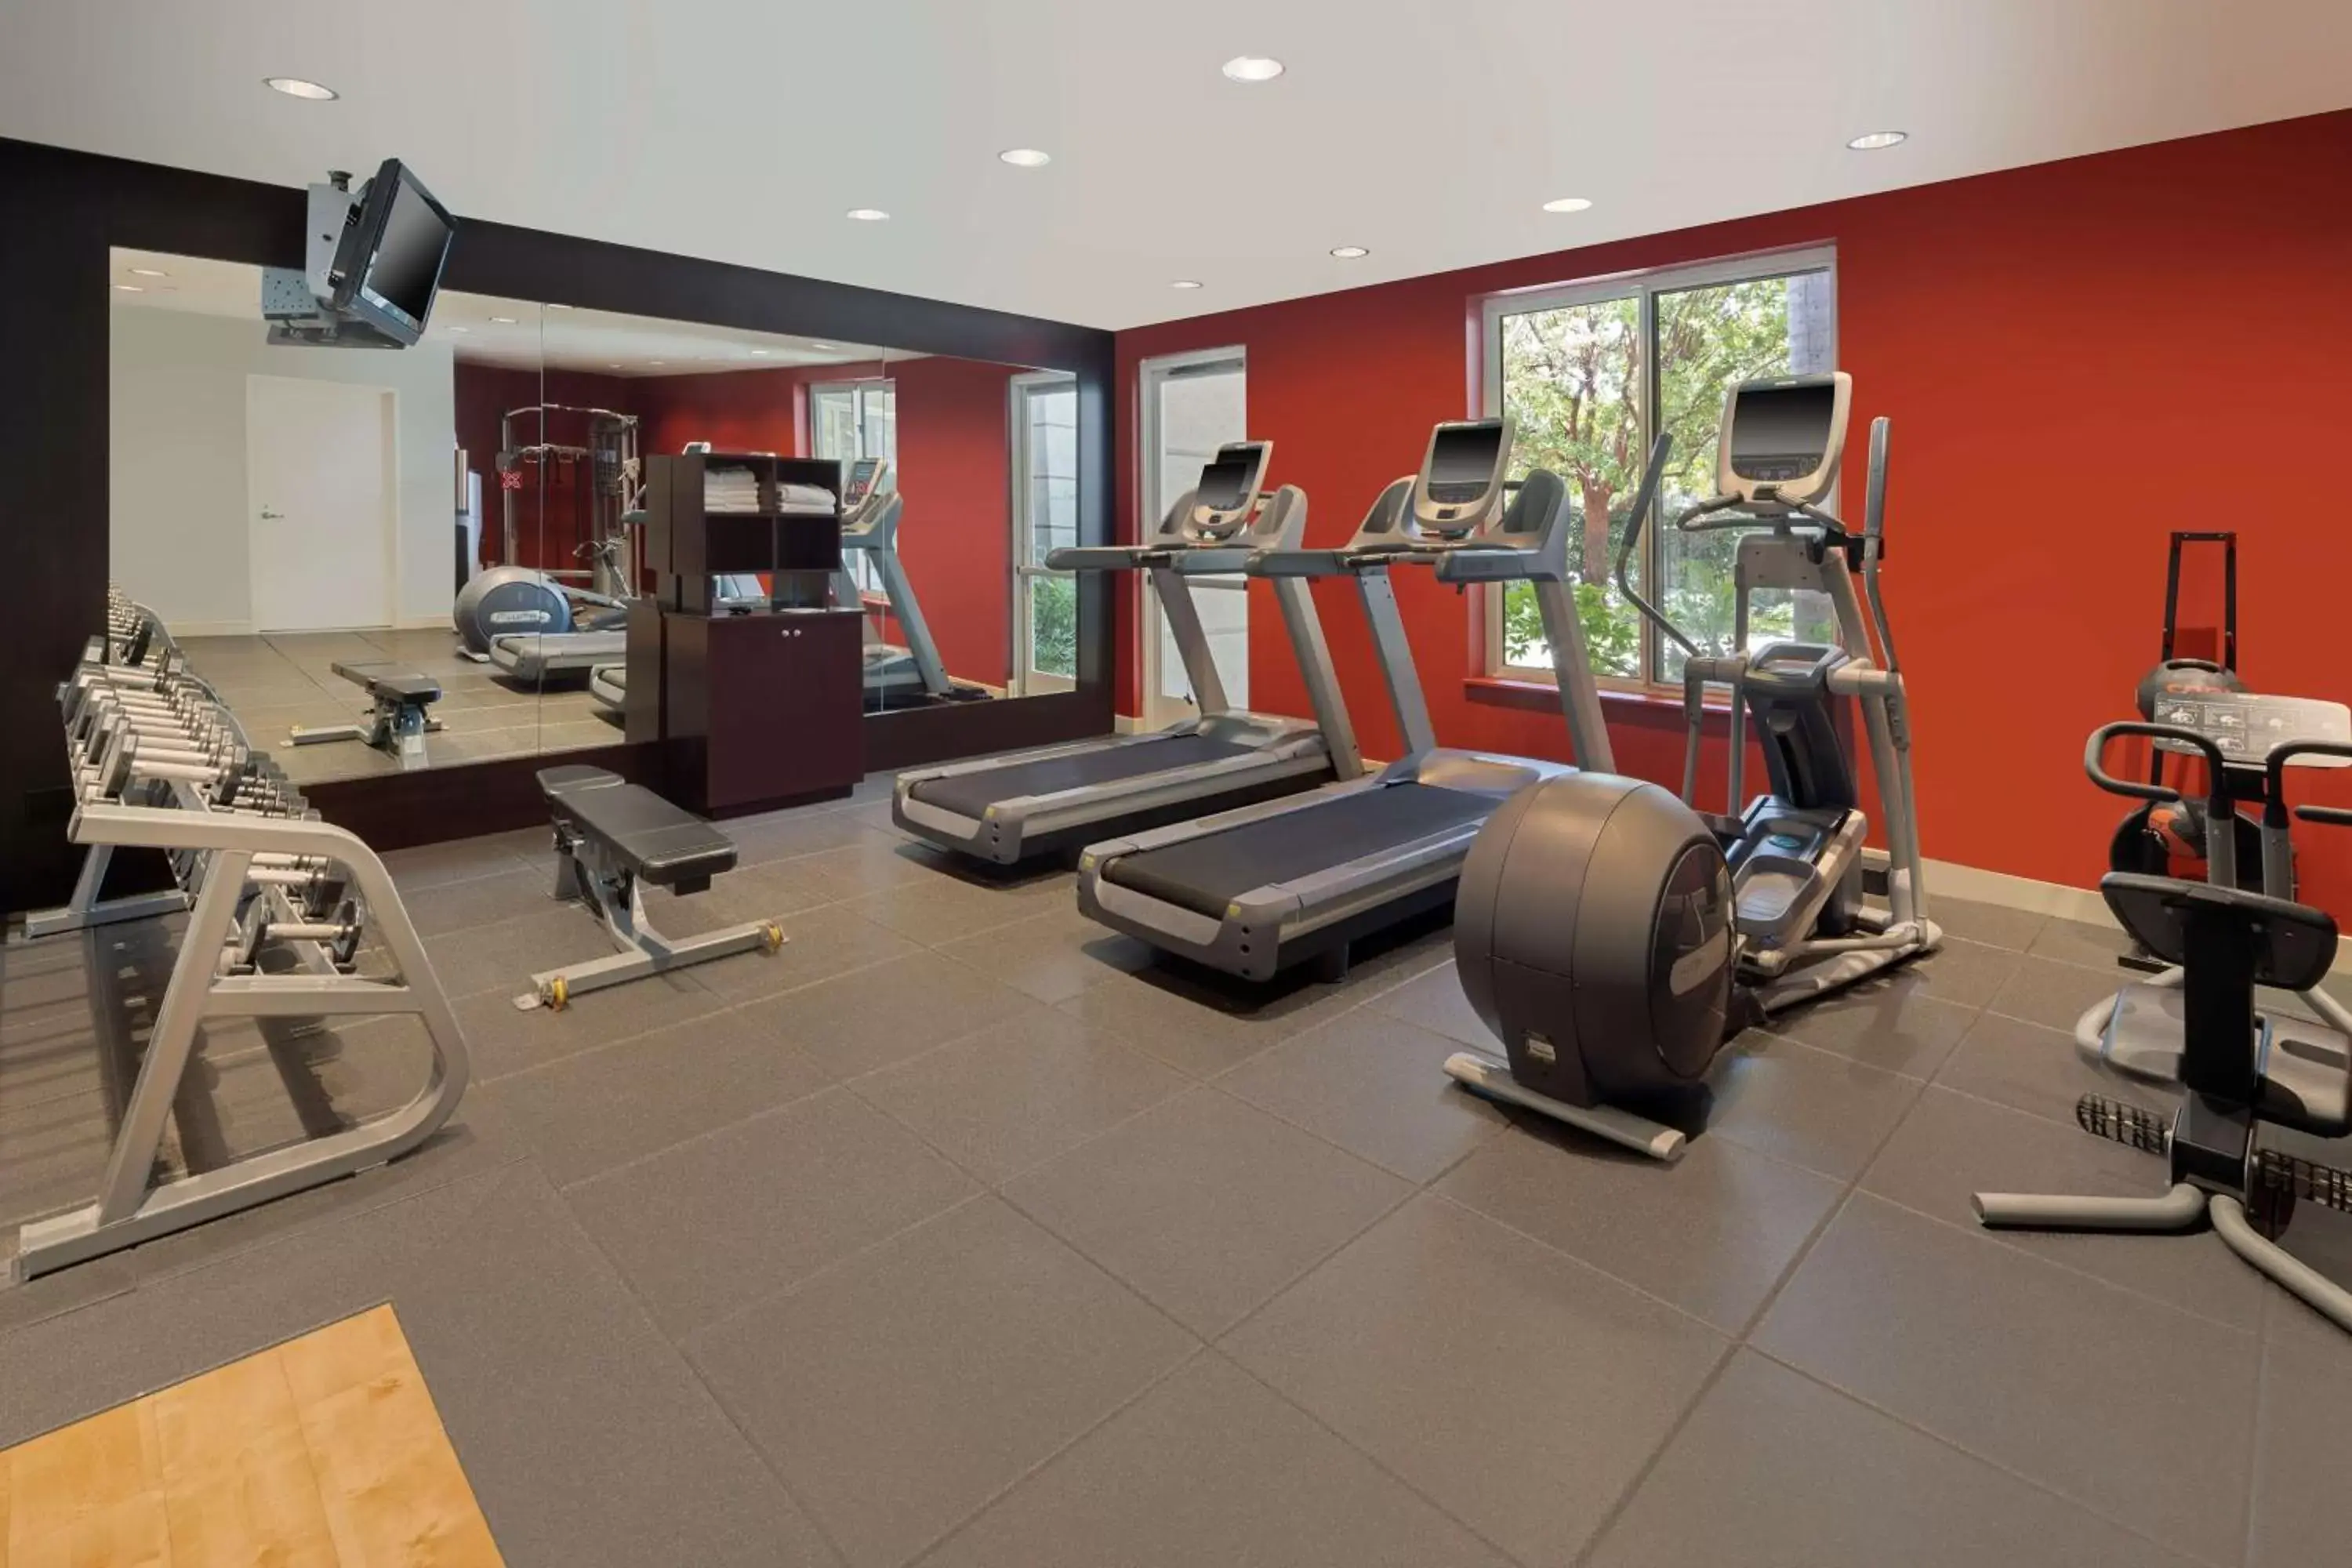 Fitness centre/facilities, Fitness Center/Facilities in Hilton Garden Inn LAX - El Segundo